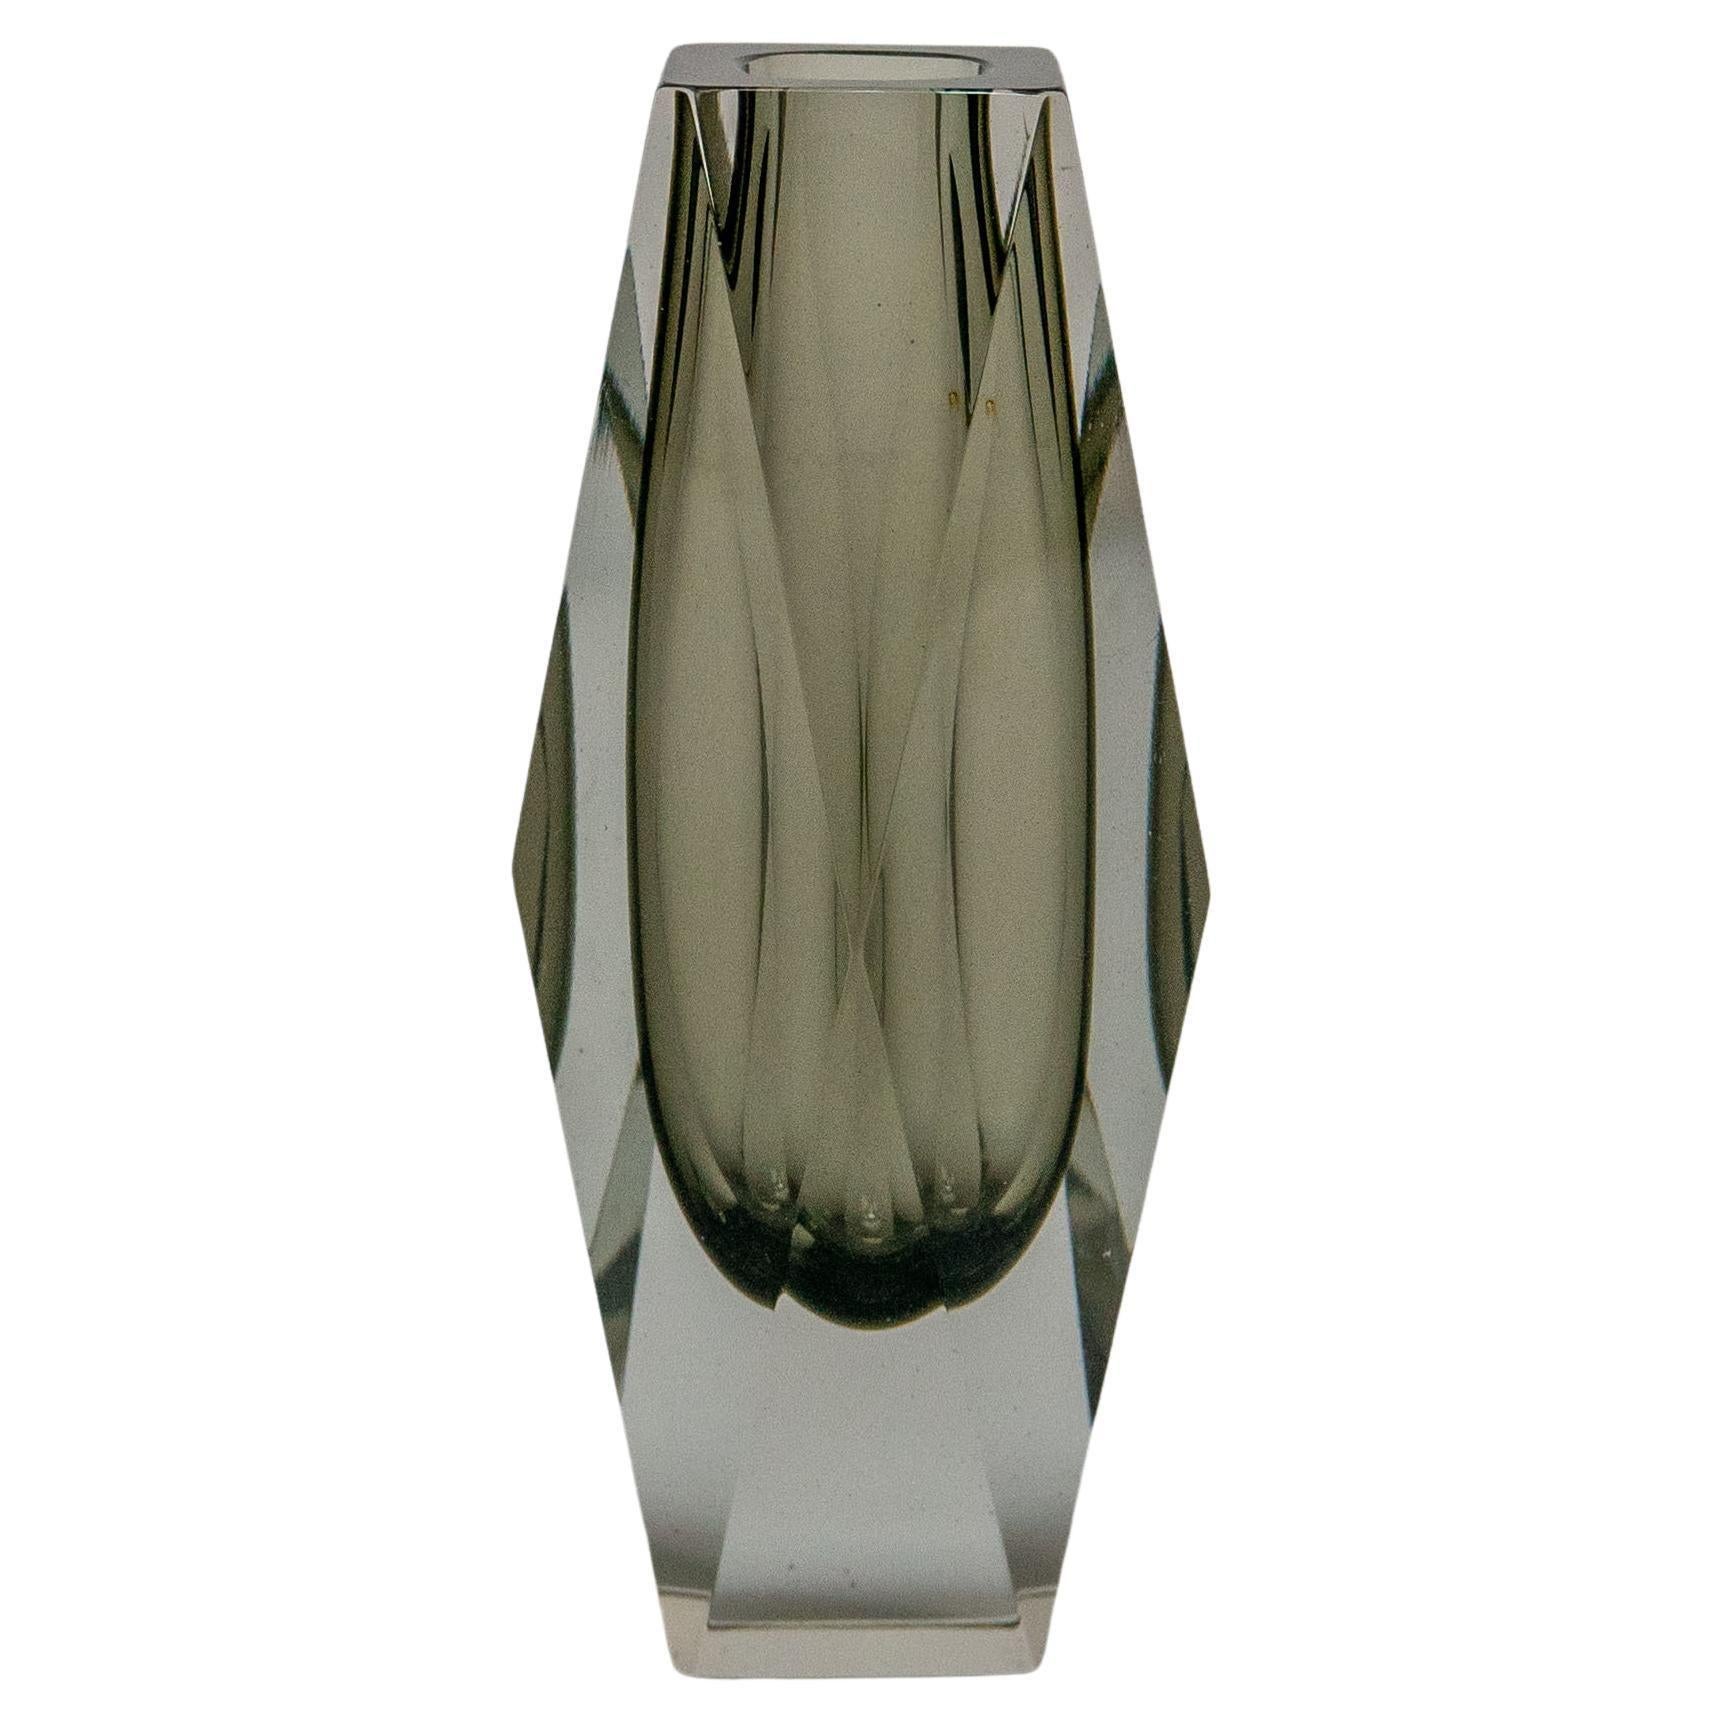 Vintage Italian Vase aus massivem grauen Murano-Glas "Sommerso", Flavio Poli-Stil